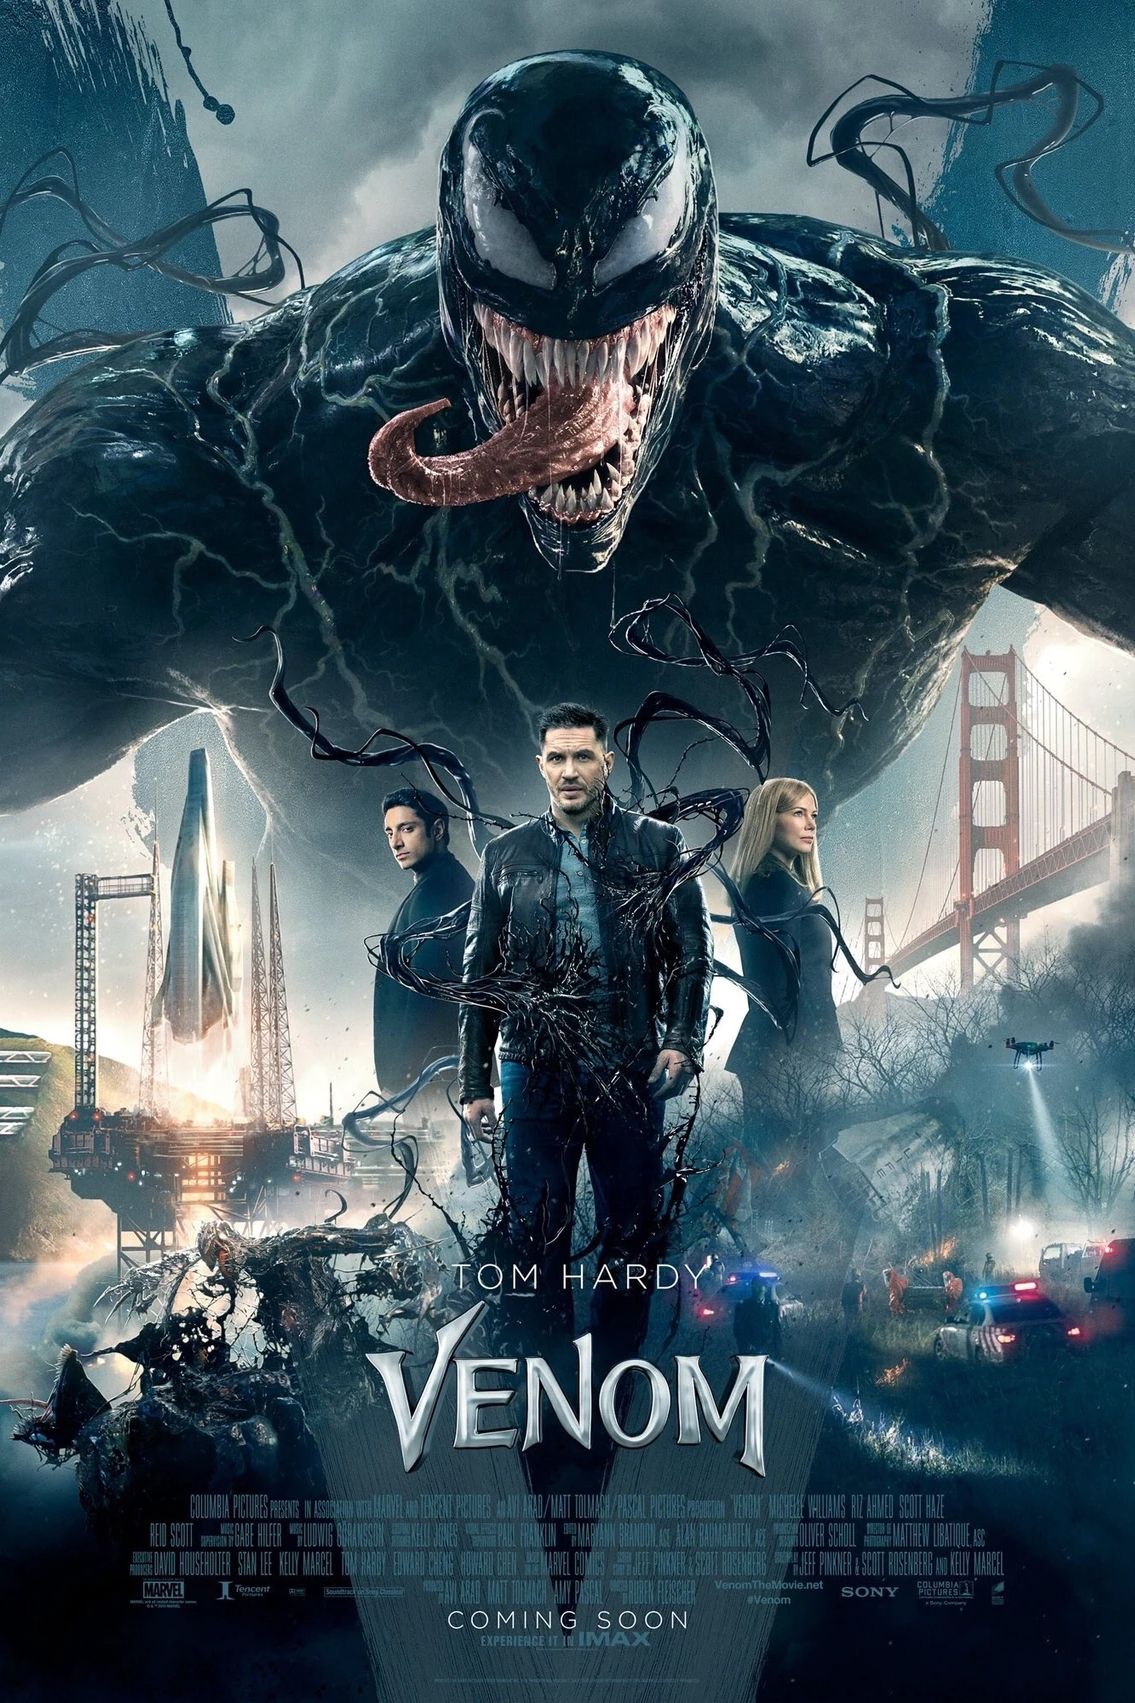 Venom Film Teases the Start of Production on Social Media